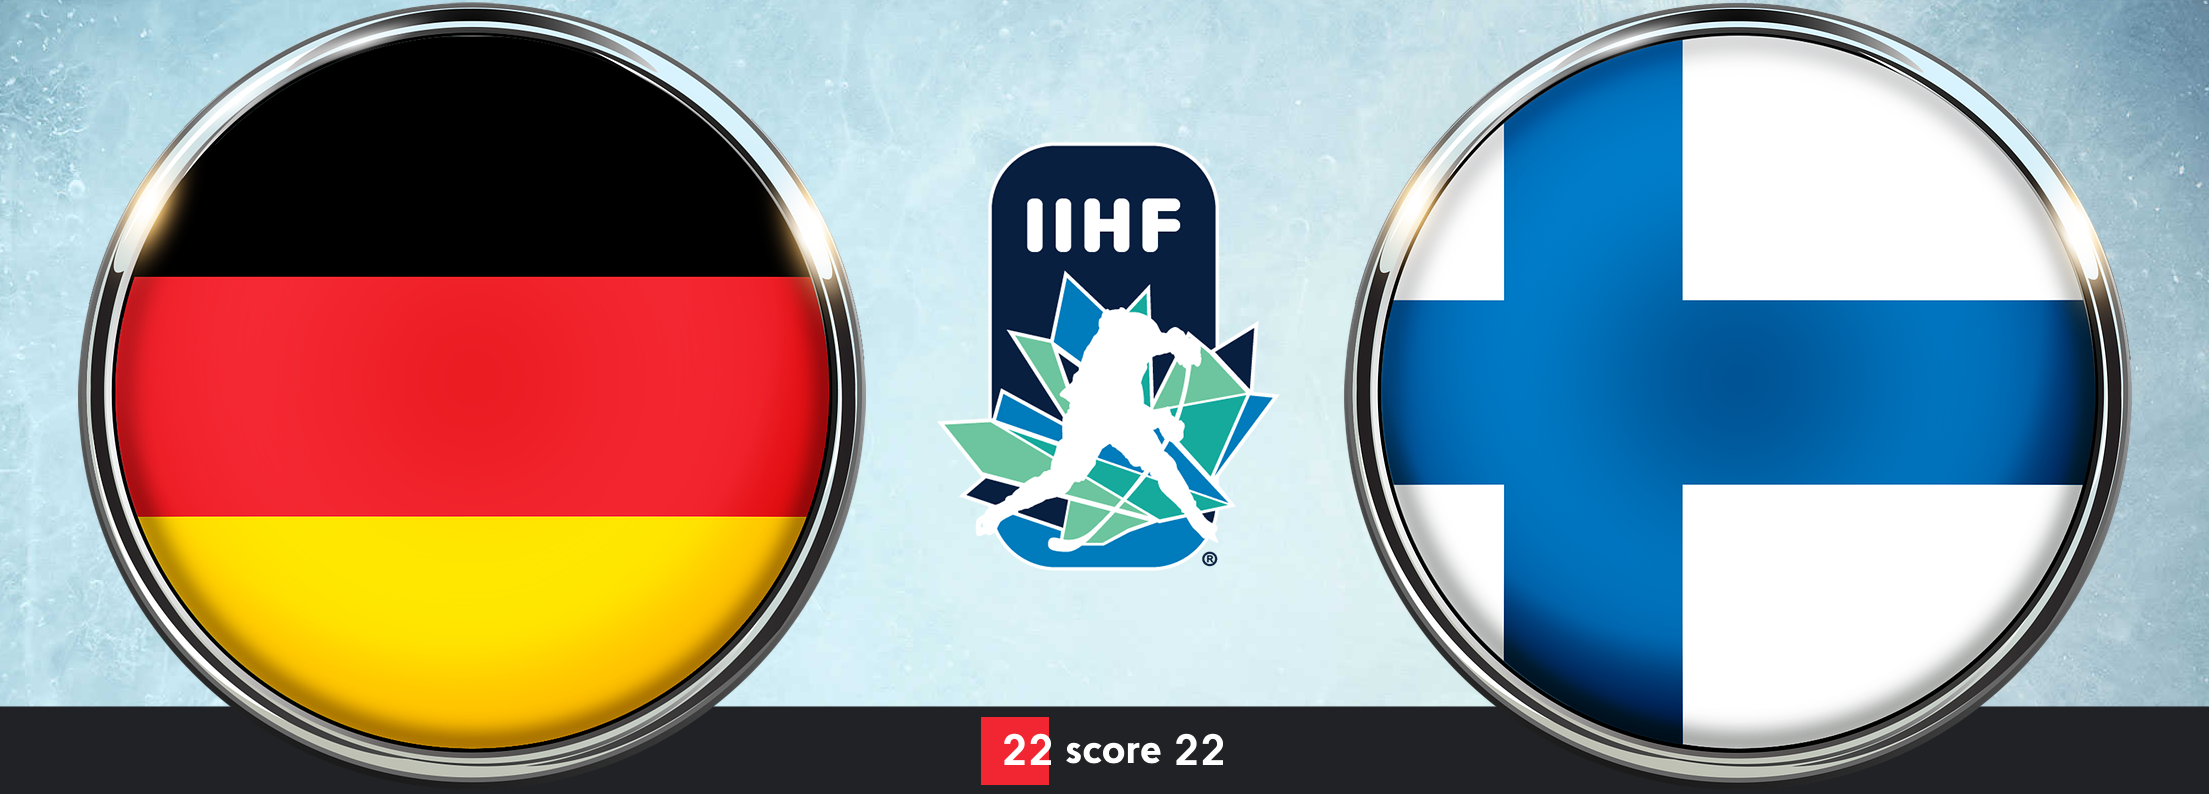 Чемпионат Мира до 20 лет  Германия до 20 – Финляндия до 20 смотреть онлайн трансляцию 26.12.2020